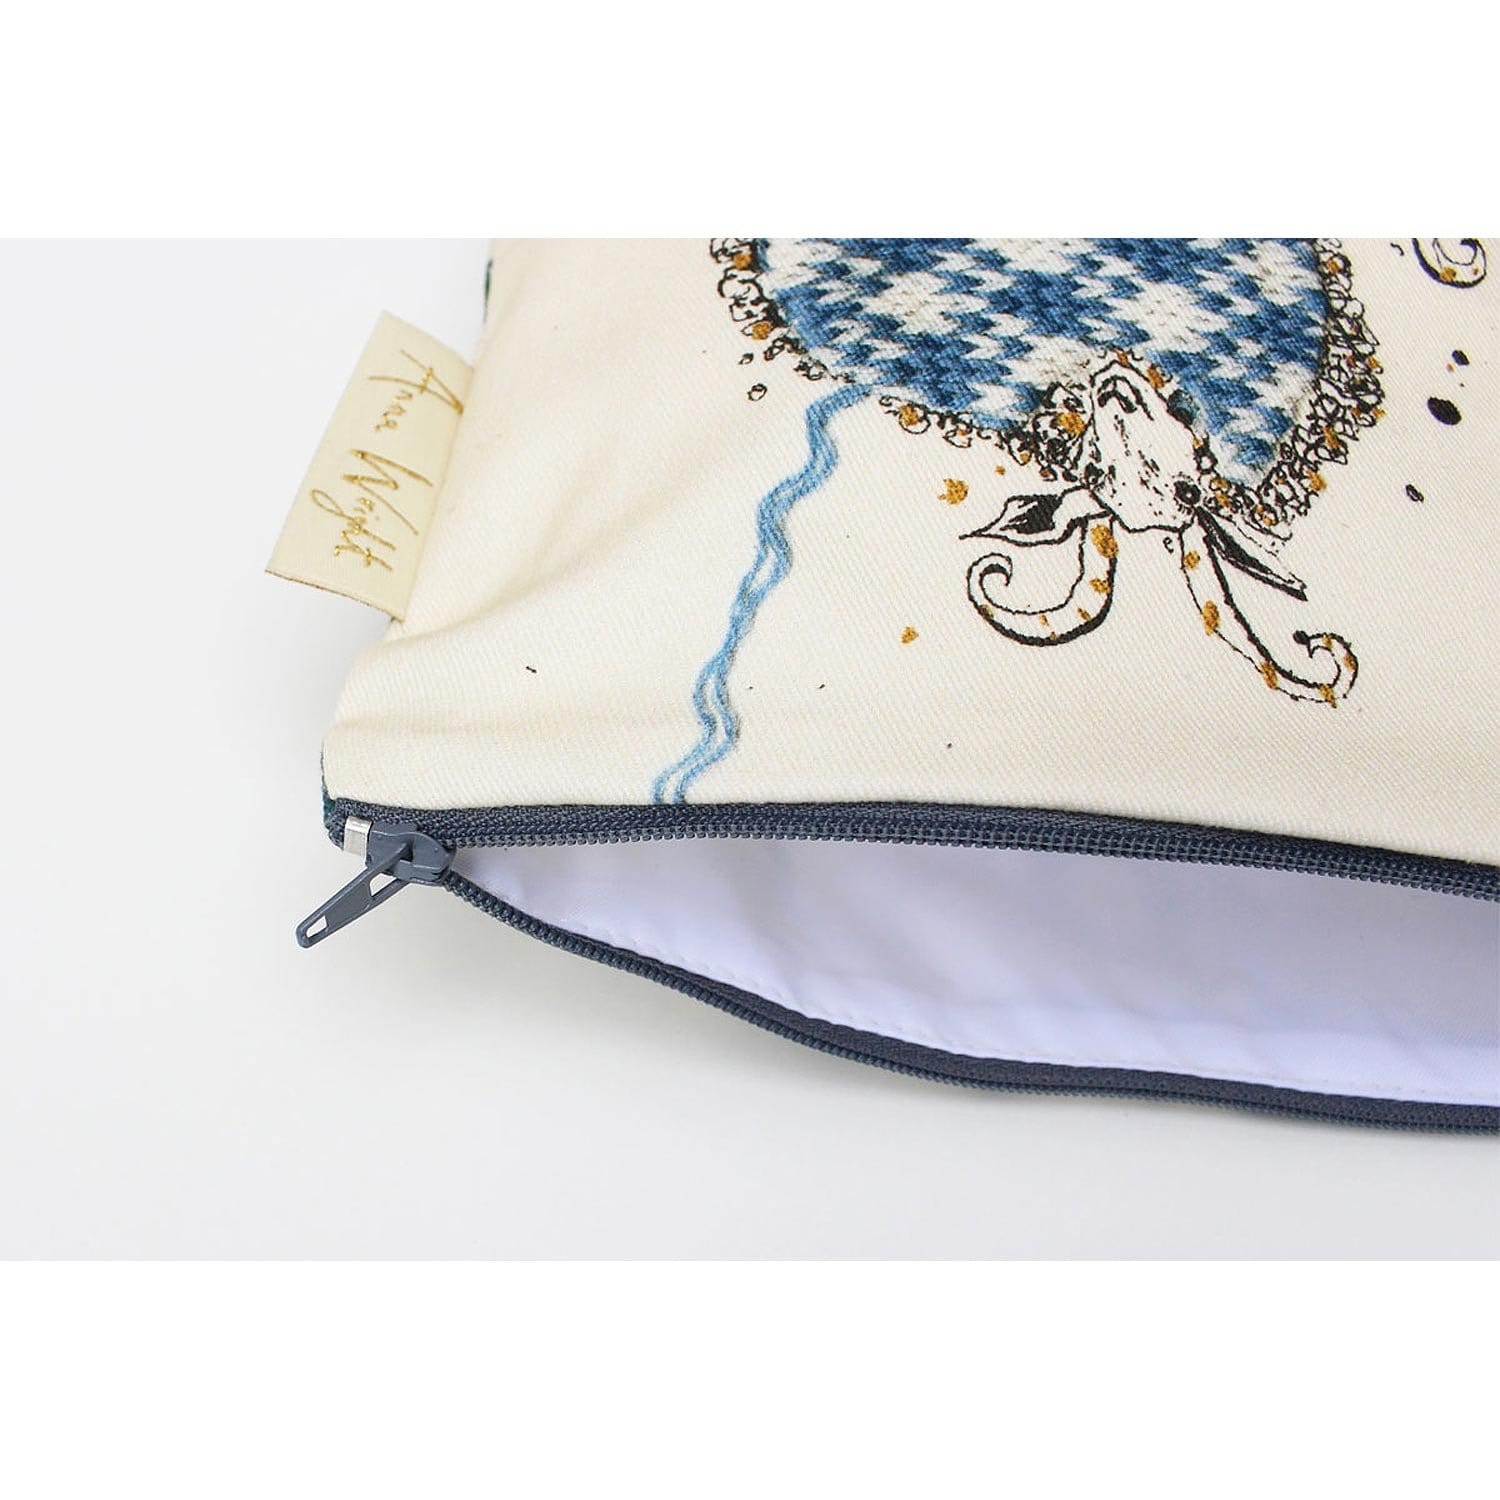 Anna Wright Make Up Bag "The Knitting Circle" Design